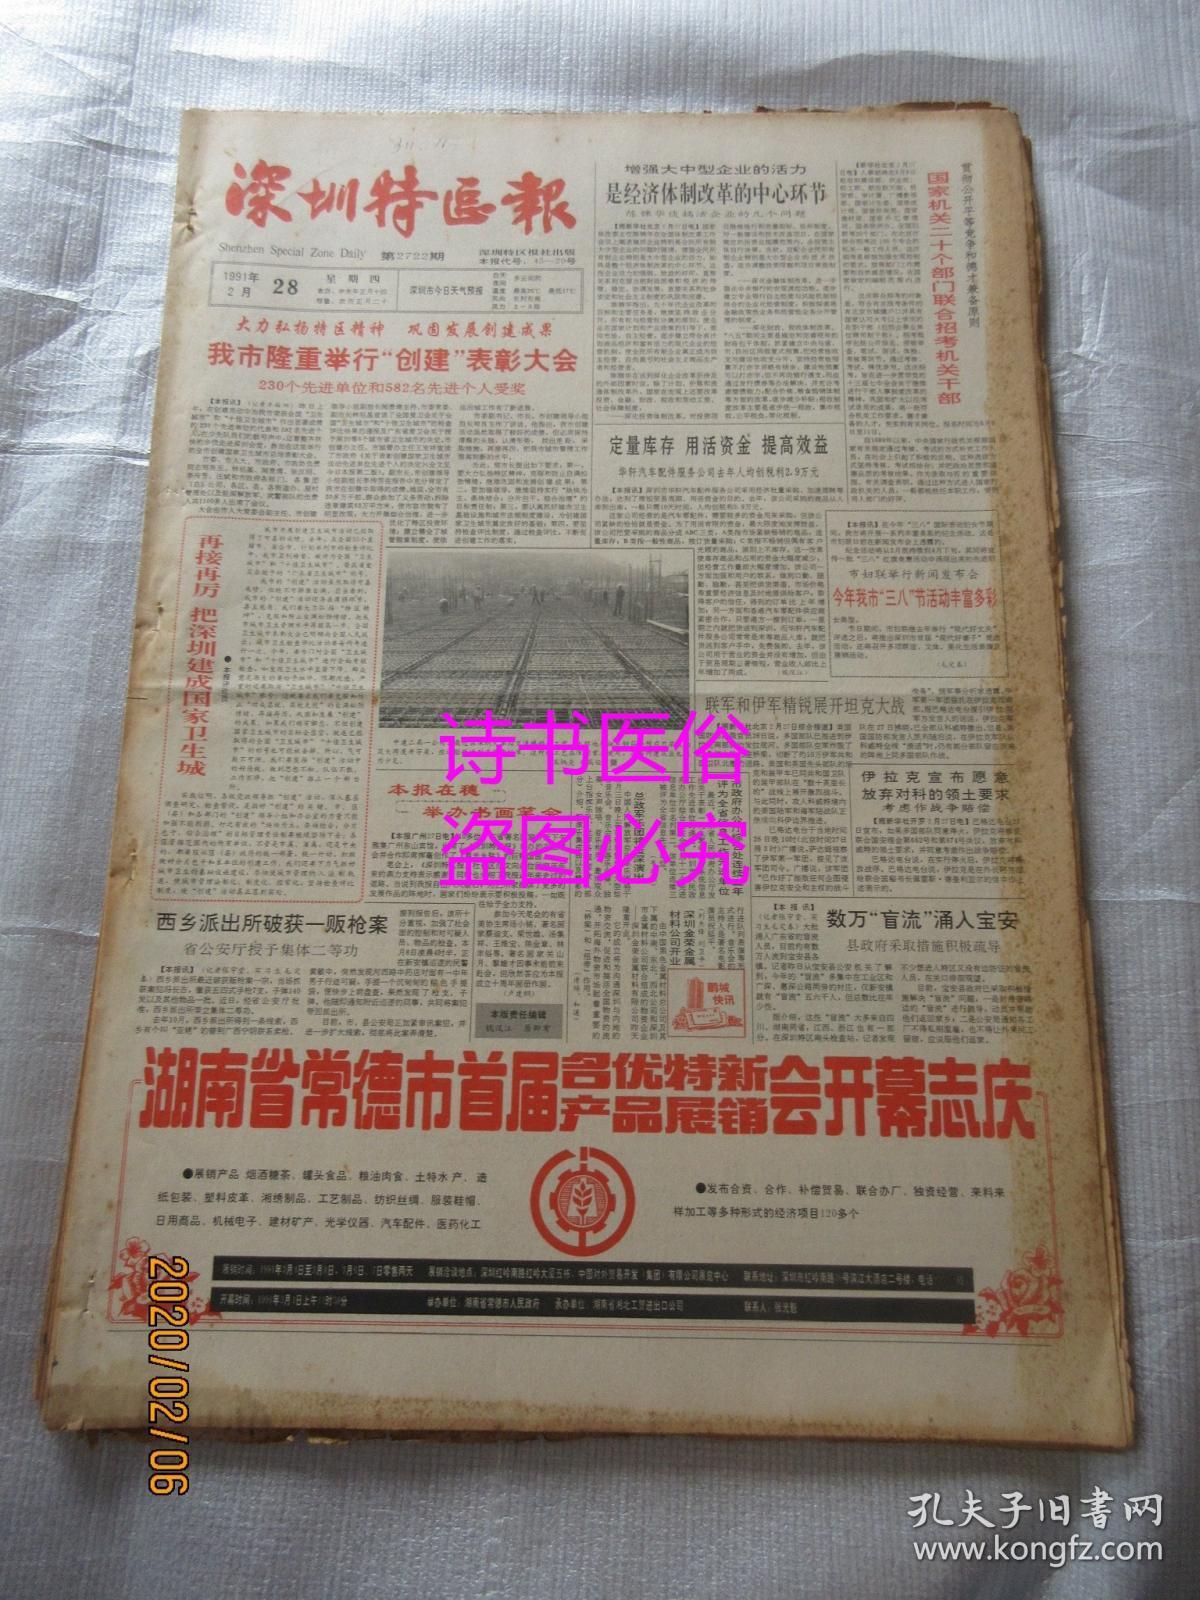 老报纸:深圳特区报 1991年2月28日 第2722期(